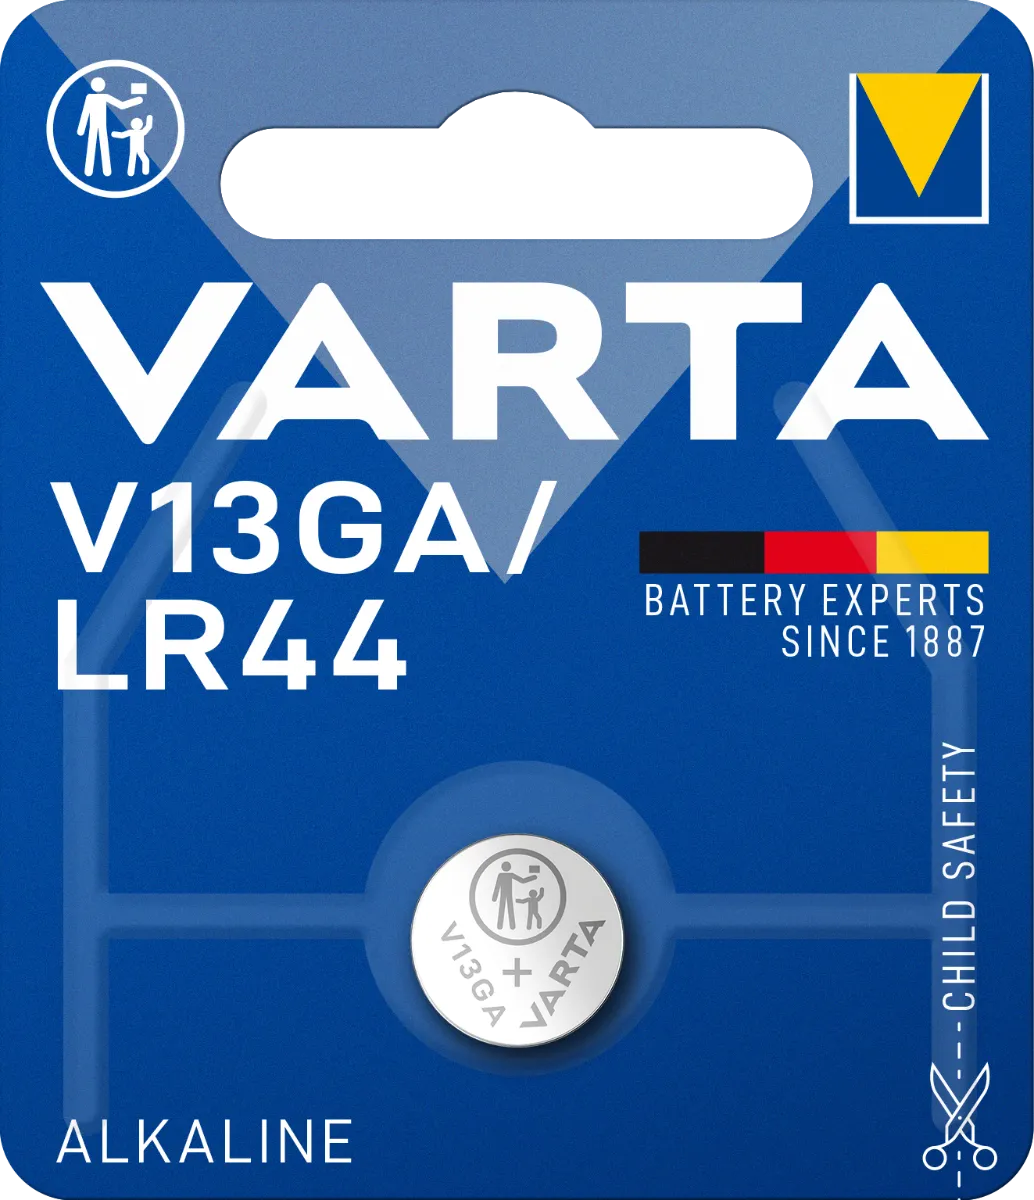 Varta V13GA/LR44 1×1 ks, lítiová batéria